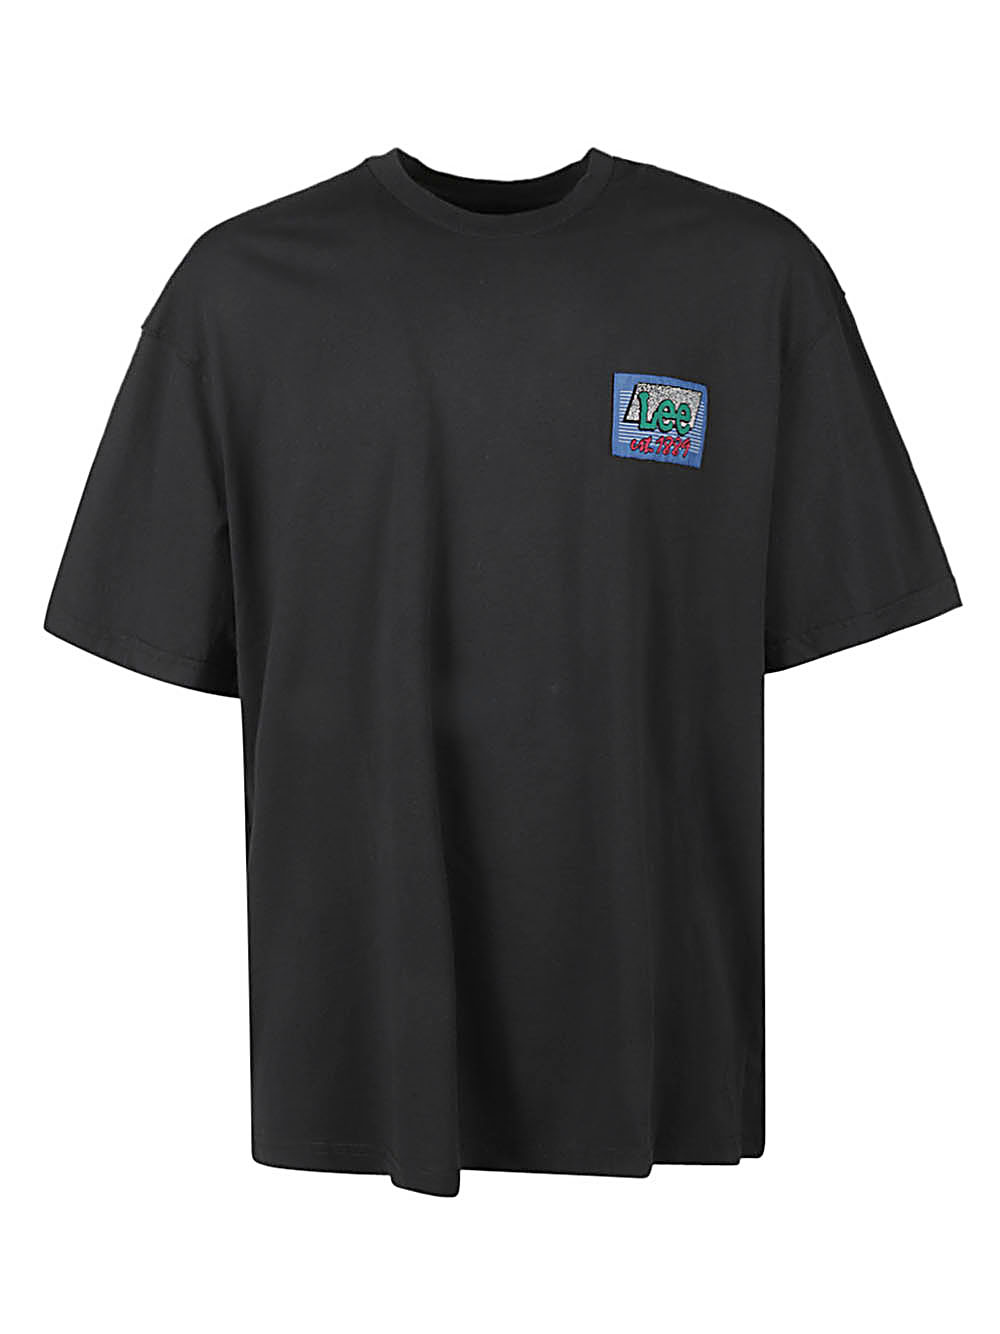 Lee Jeans LEE JEANS- Logo Cotton T-shirt